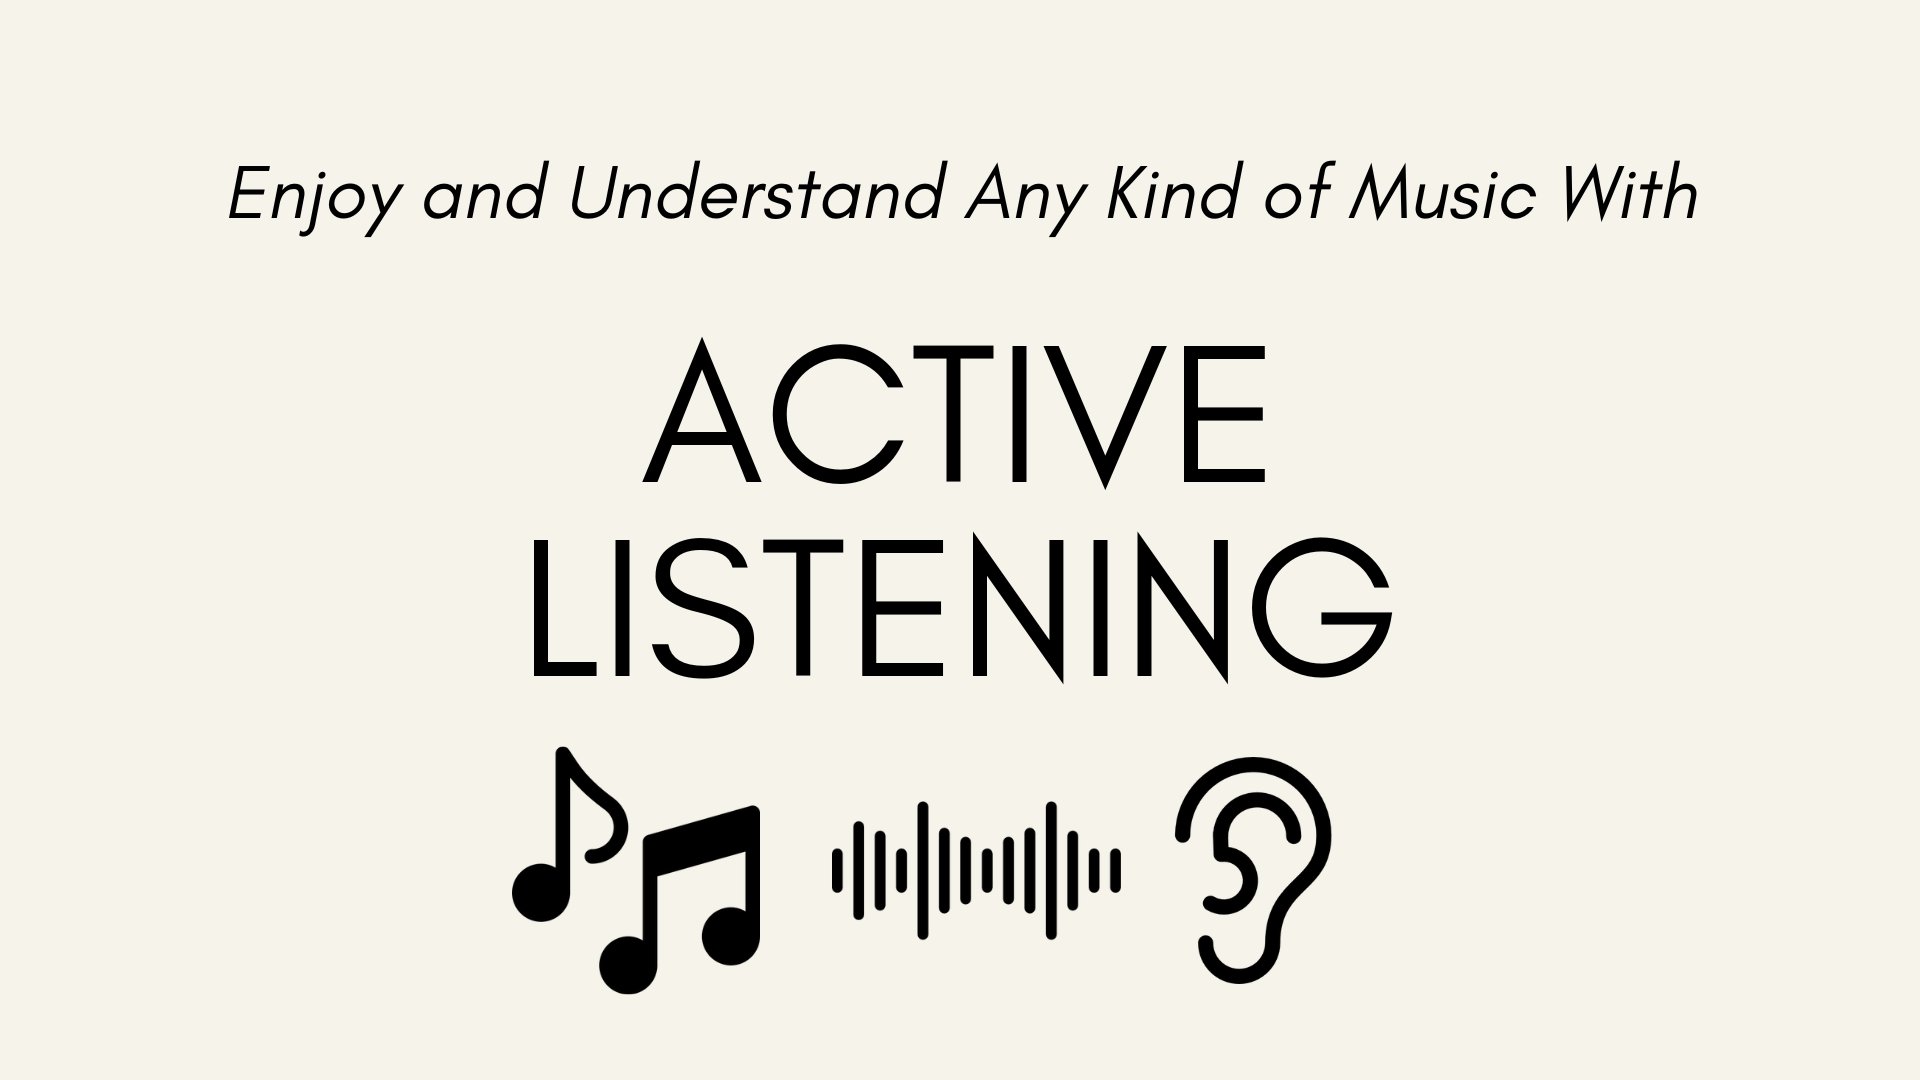 آموزش گوش دادن فعال: از هر نوع موسیقی لذت ببرید و آن را درک کنید